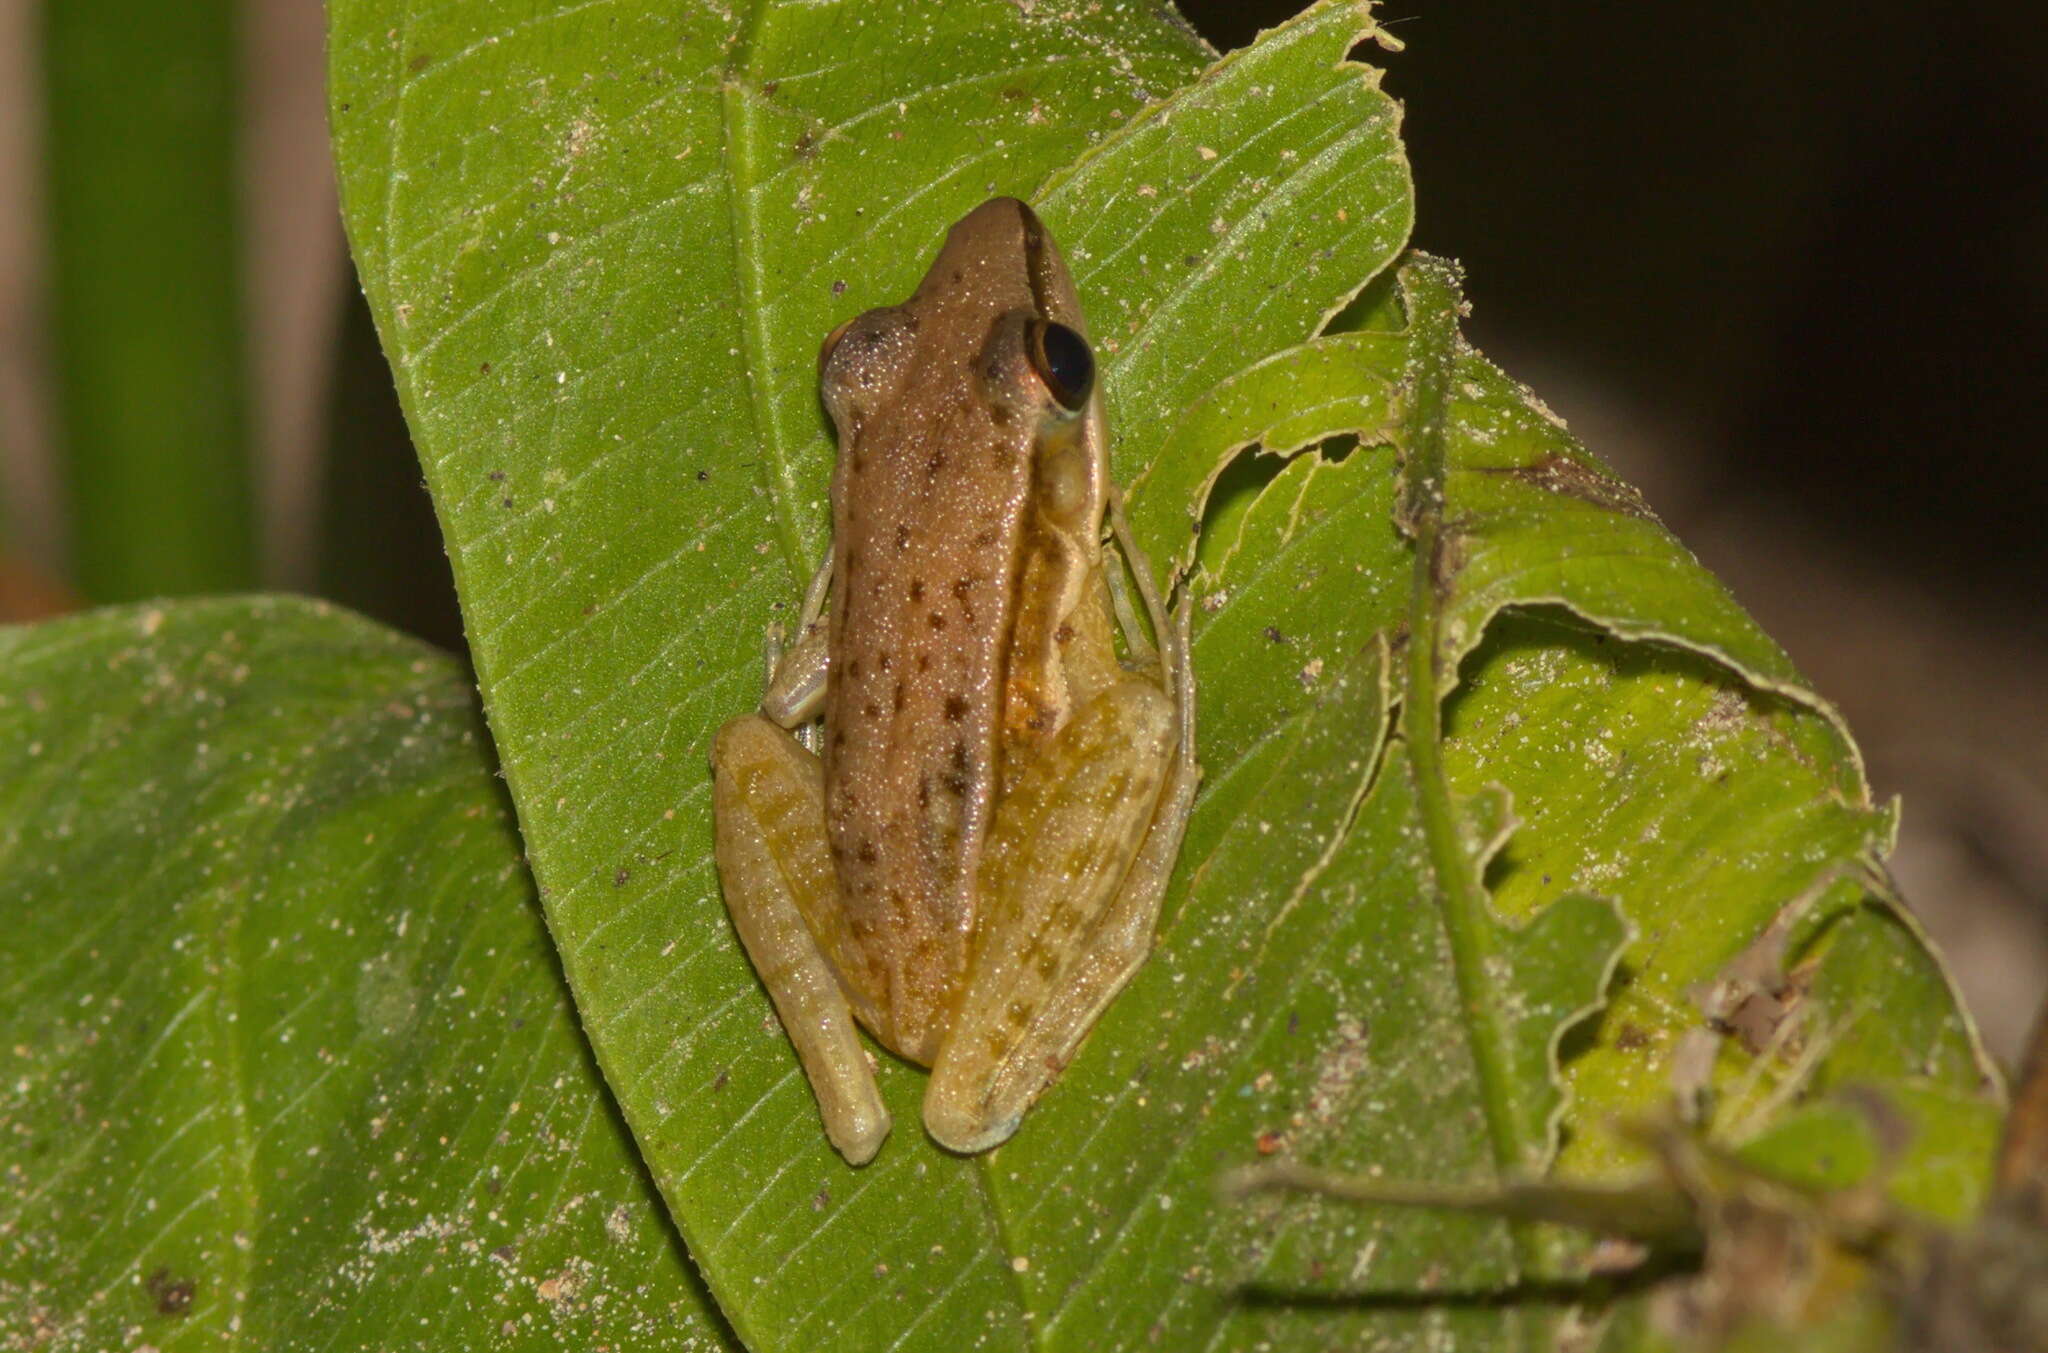 Image of Taipei frog